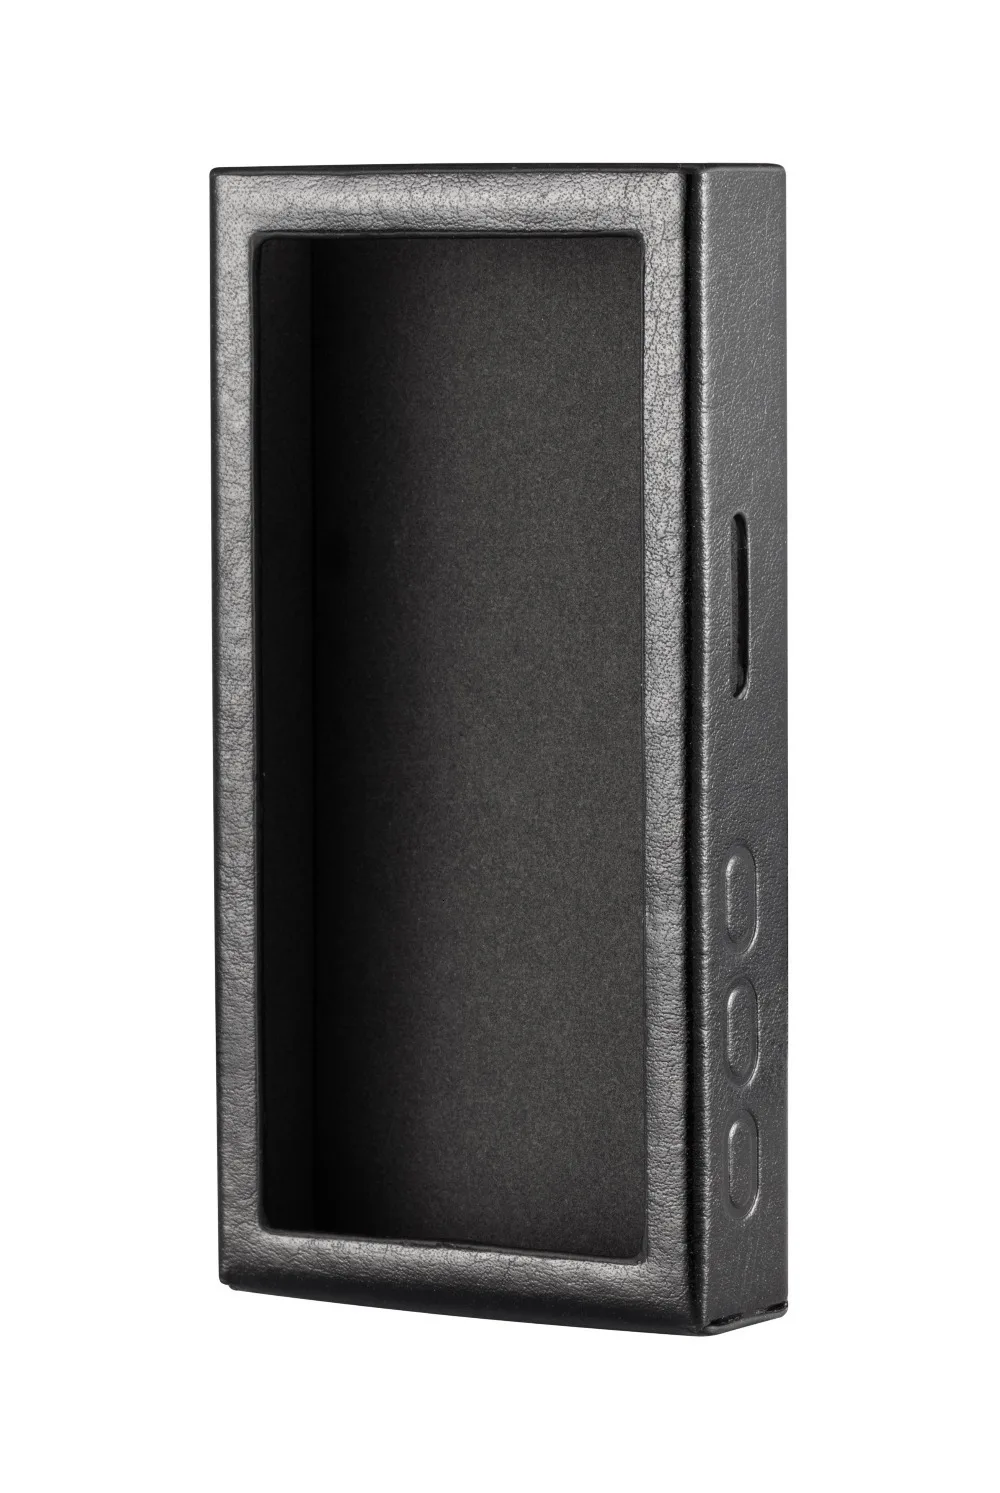 AK XDuoo X3II MP3-плеер из искусственной кожи чехол и наклейка хорошее качество кожаный чехол и наклейка для XDuoo X3II